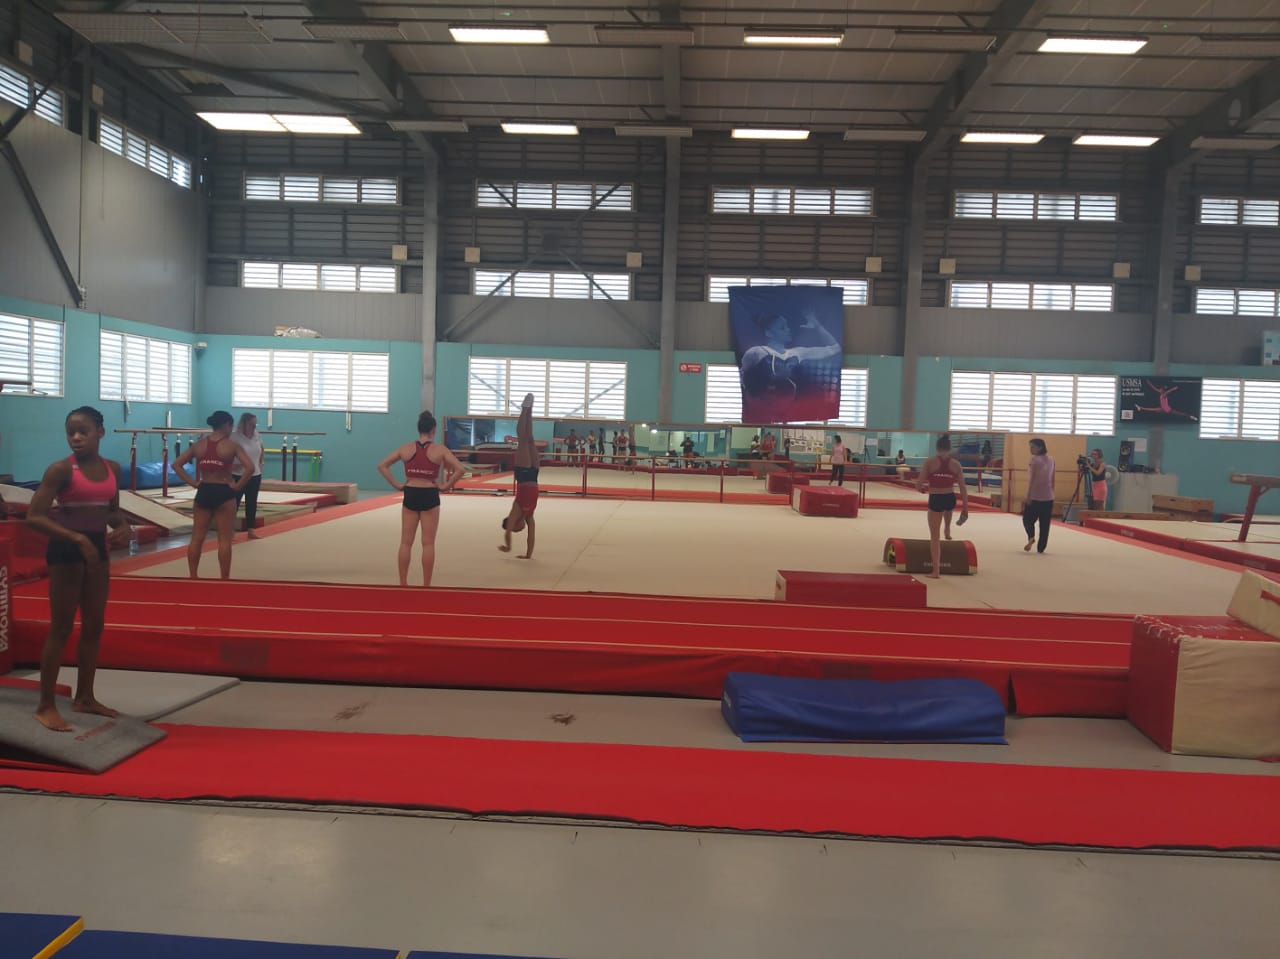     L'équipe de France de Gymnastique artistique féminine en stage en Martinique

